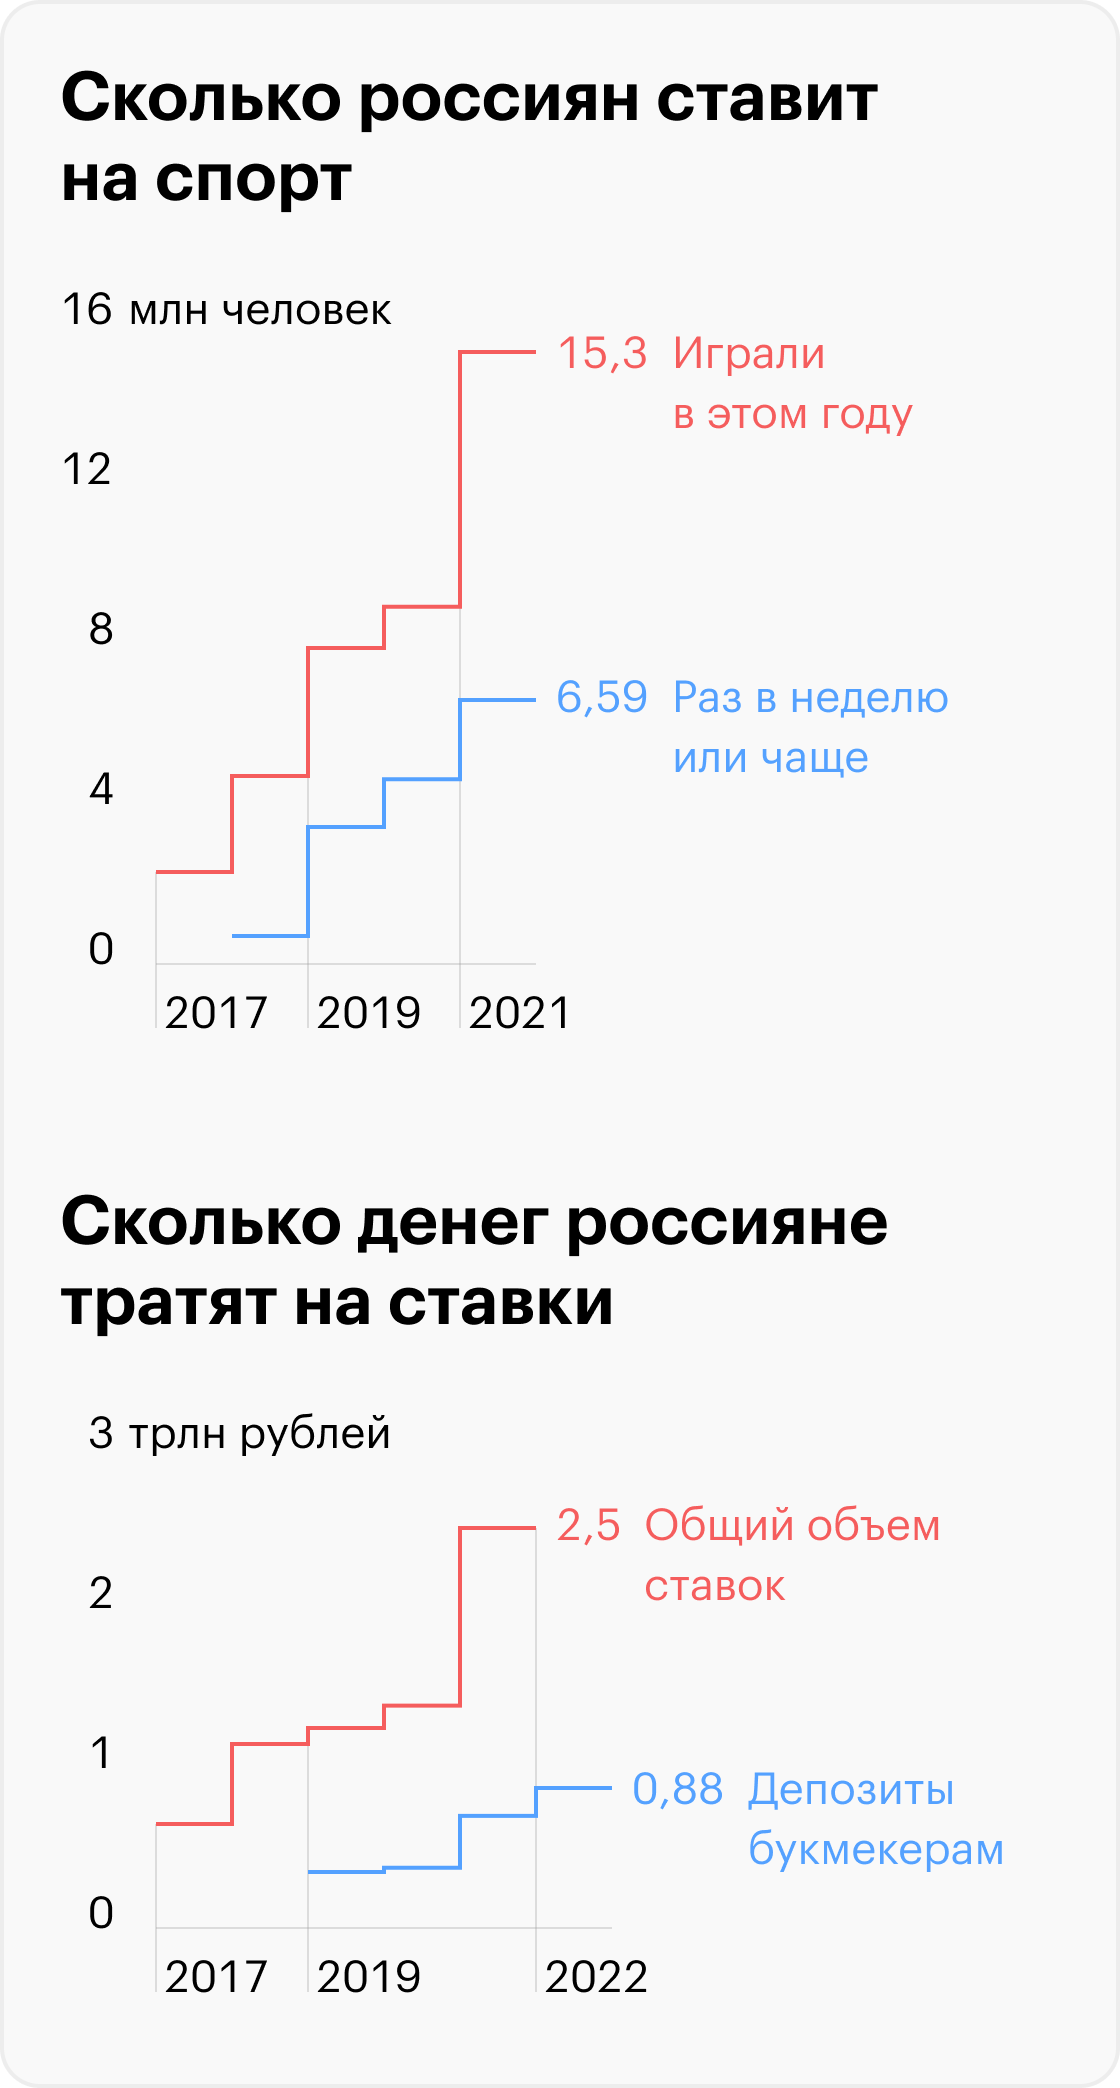 Источники: «Рейтинг букмекеров», legalbet.ru